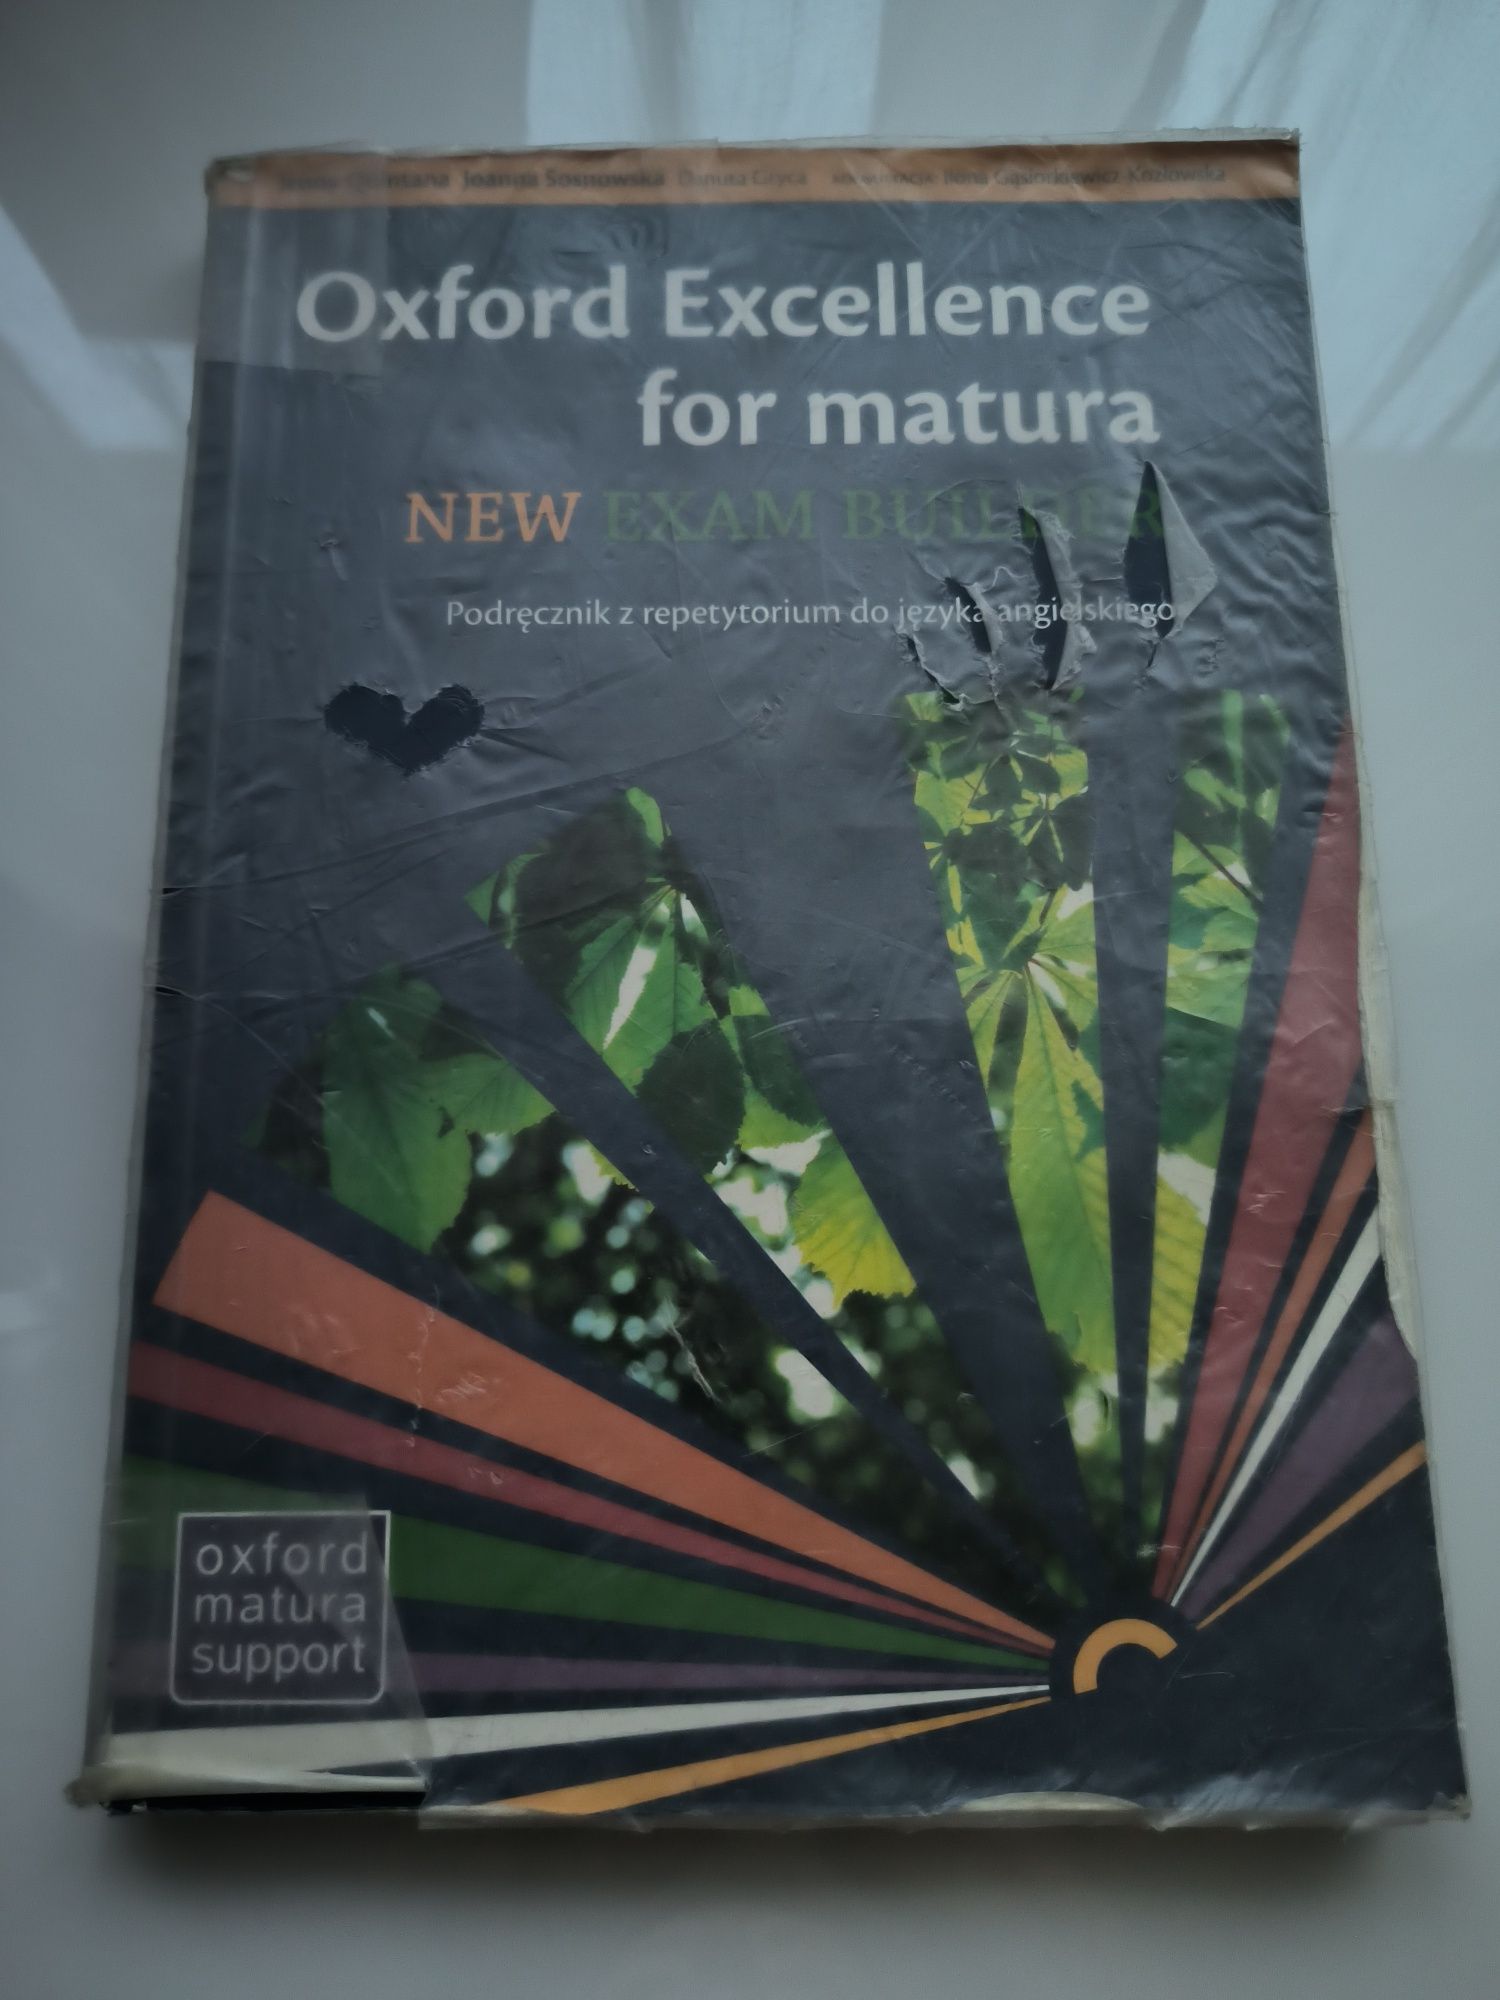 Oxford Excellece for matura